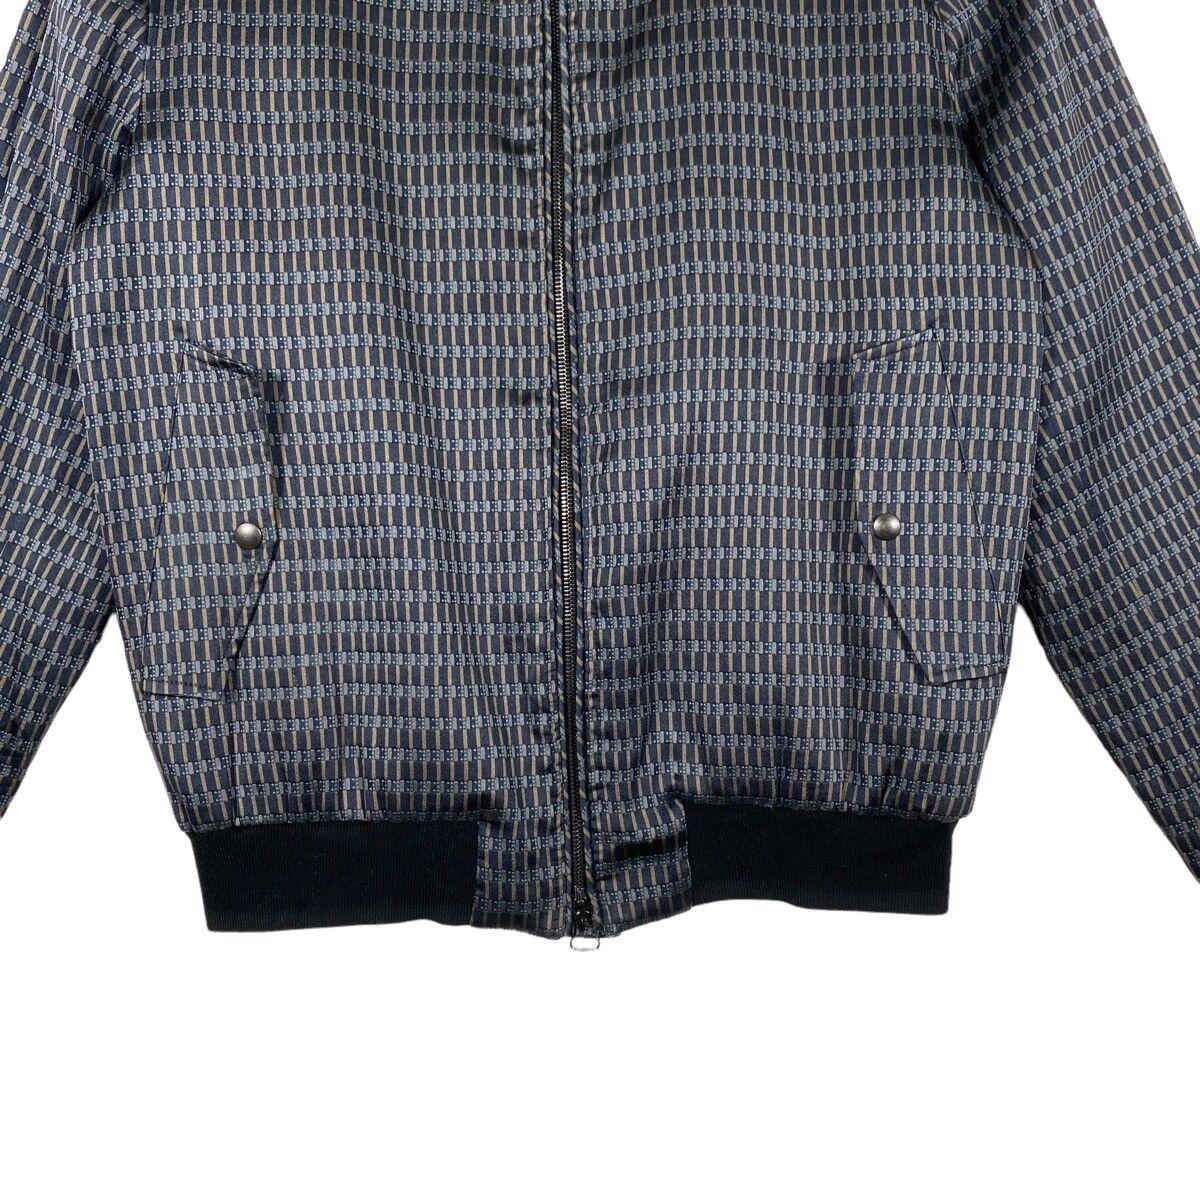 Vintage Lanvin Harrington Jacket Zipper 46 Size - 6